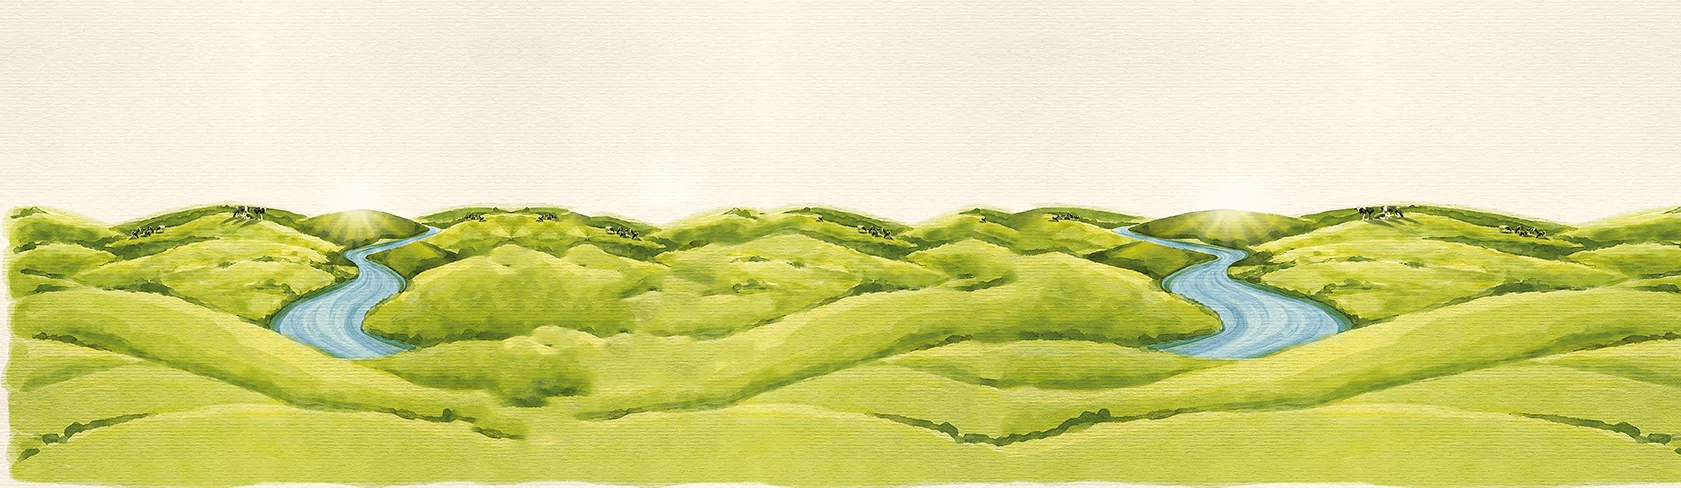 Illustration of NZ hilltops on river